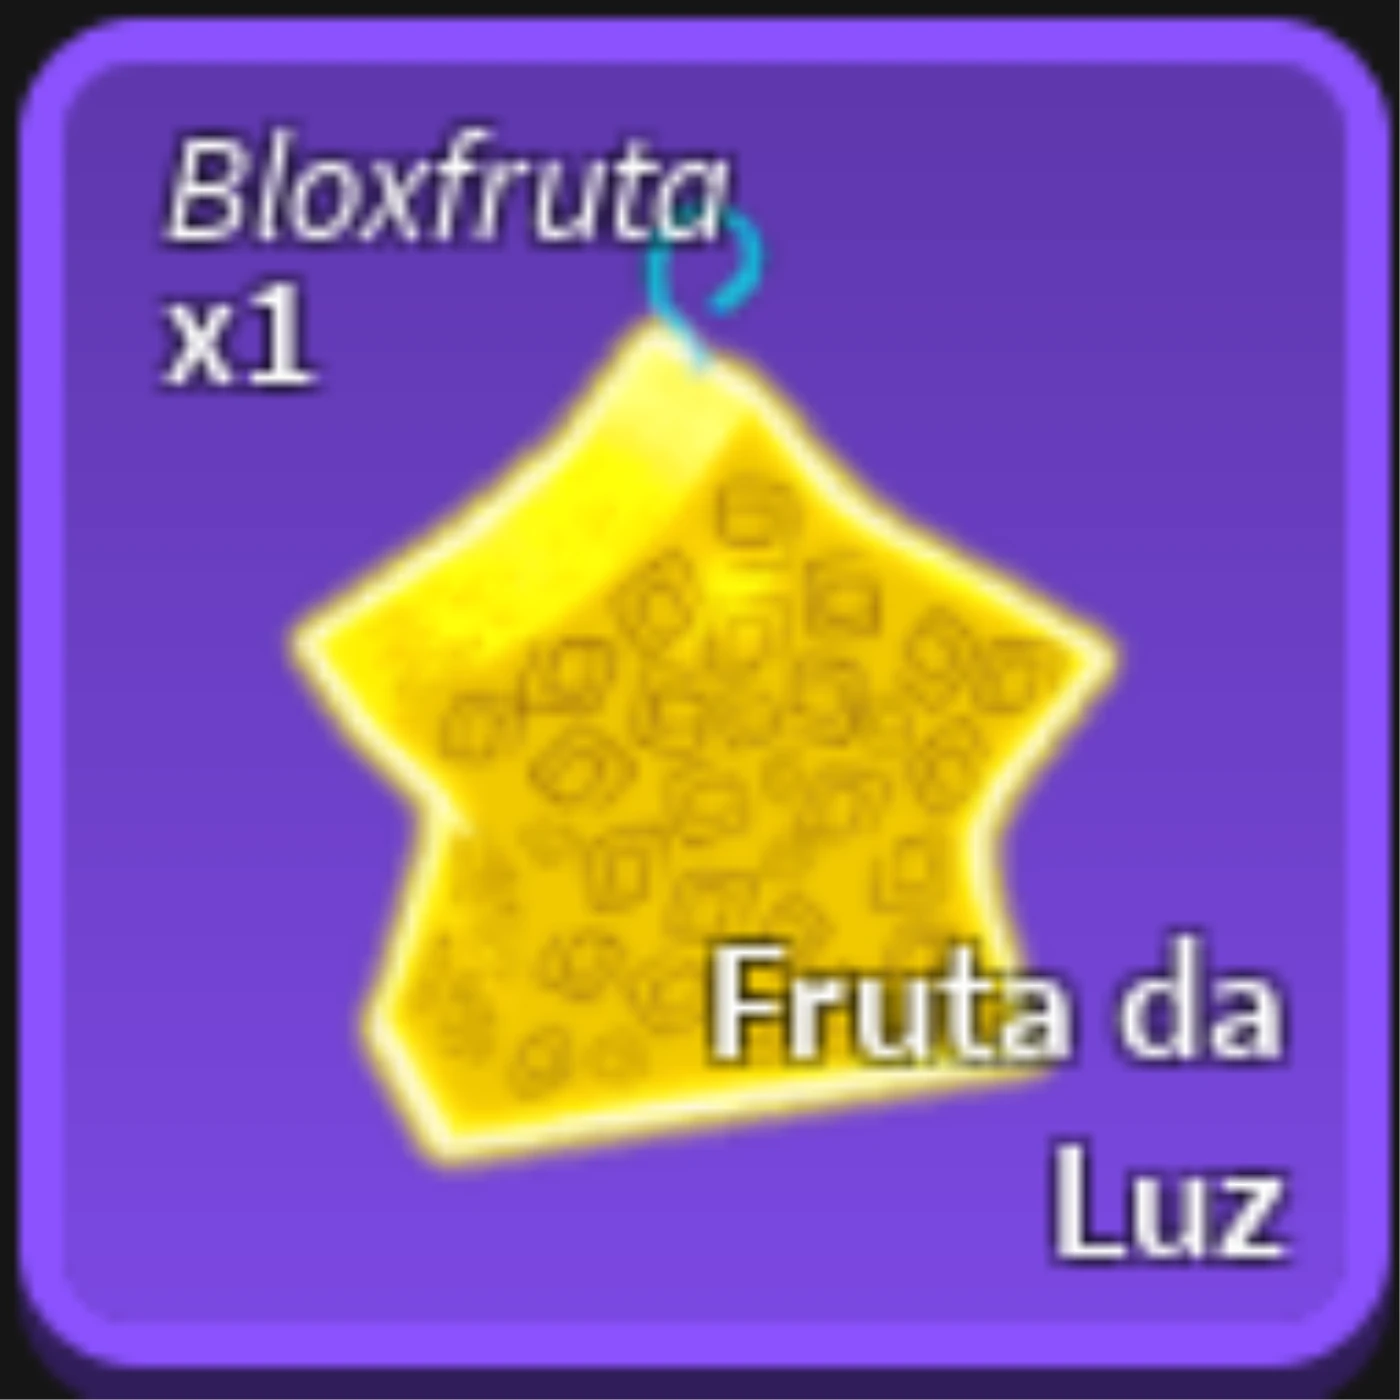 Blox Fruits - Dluz Games